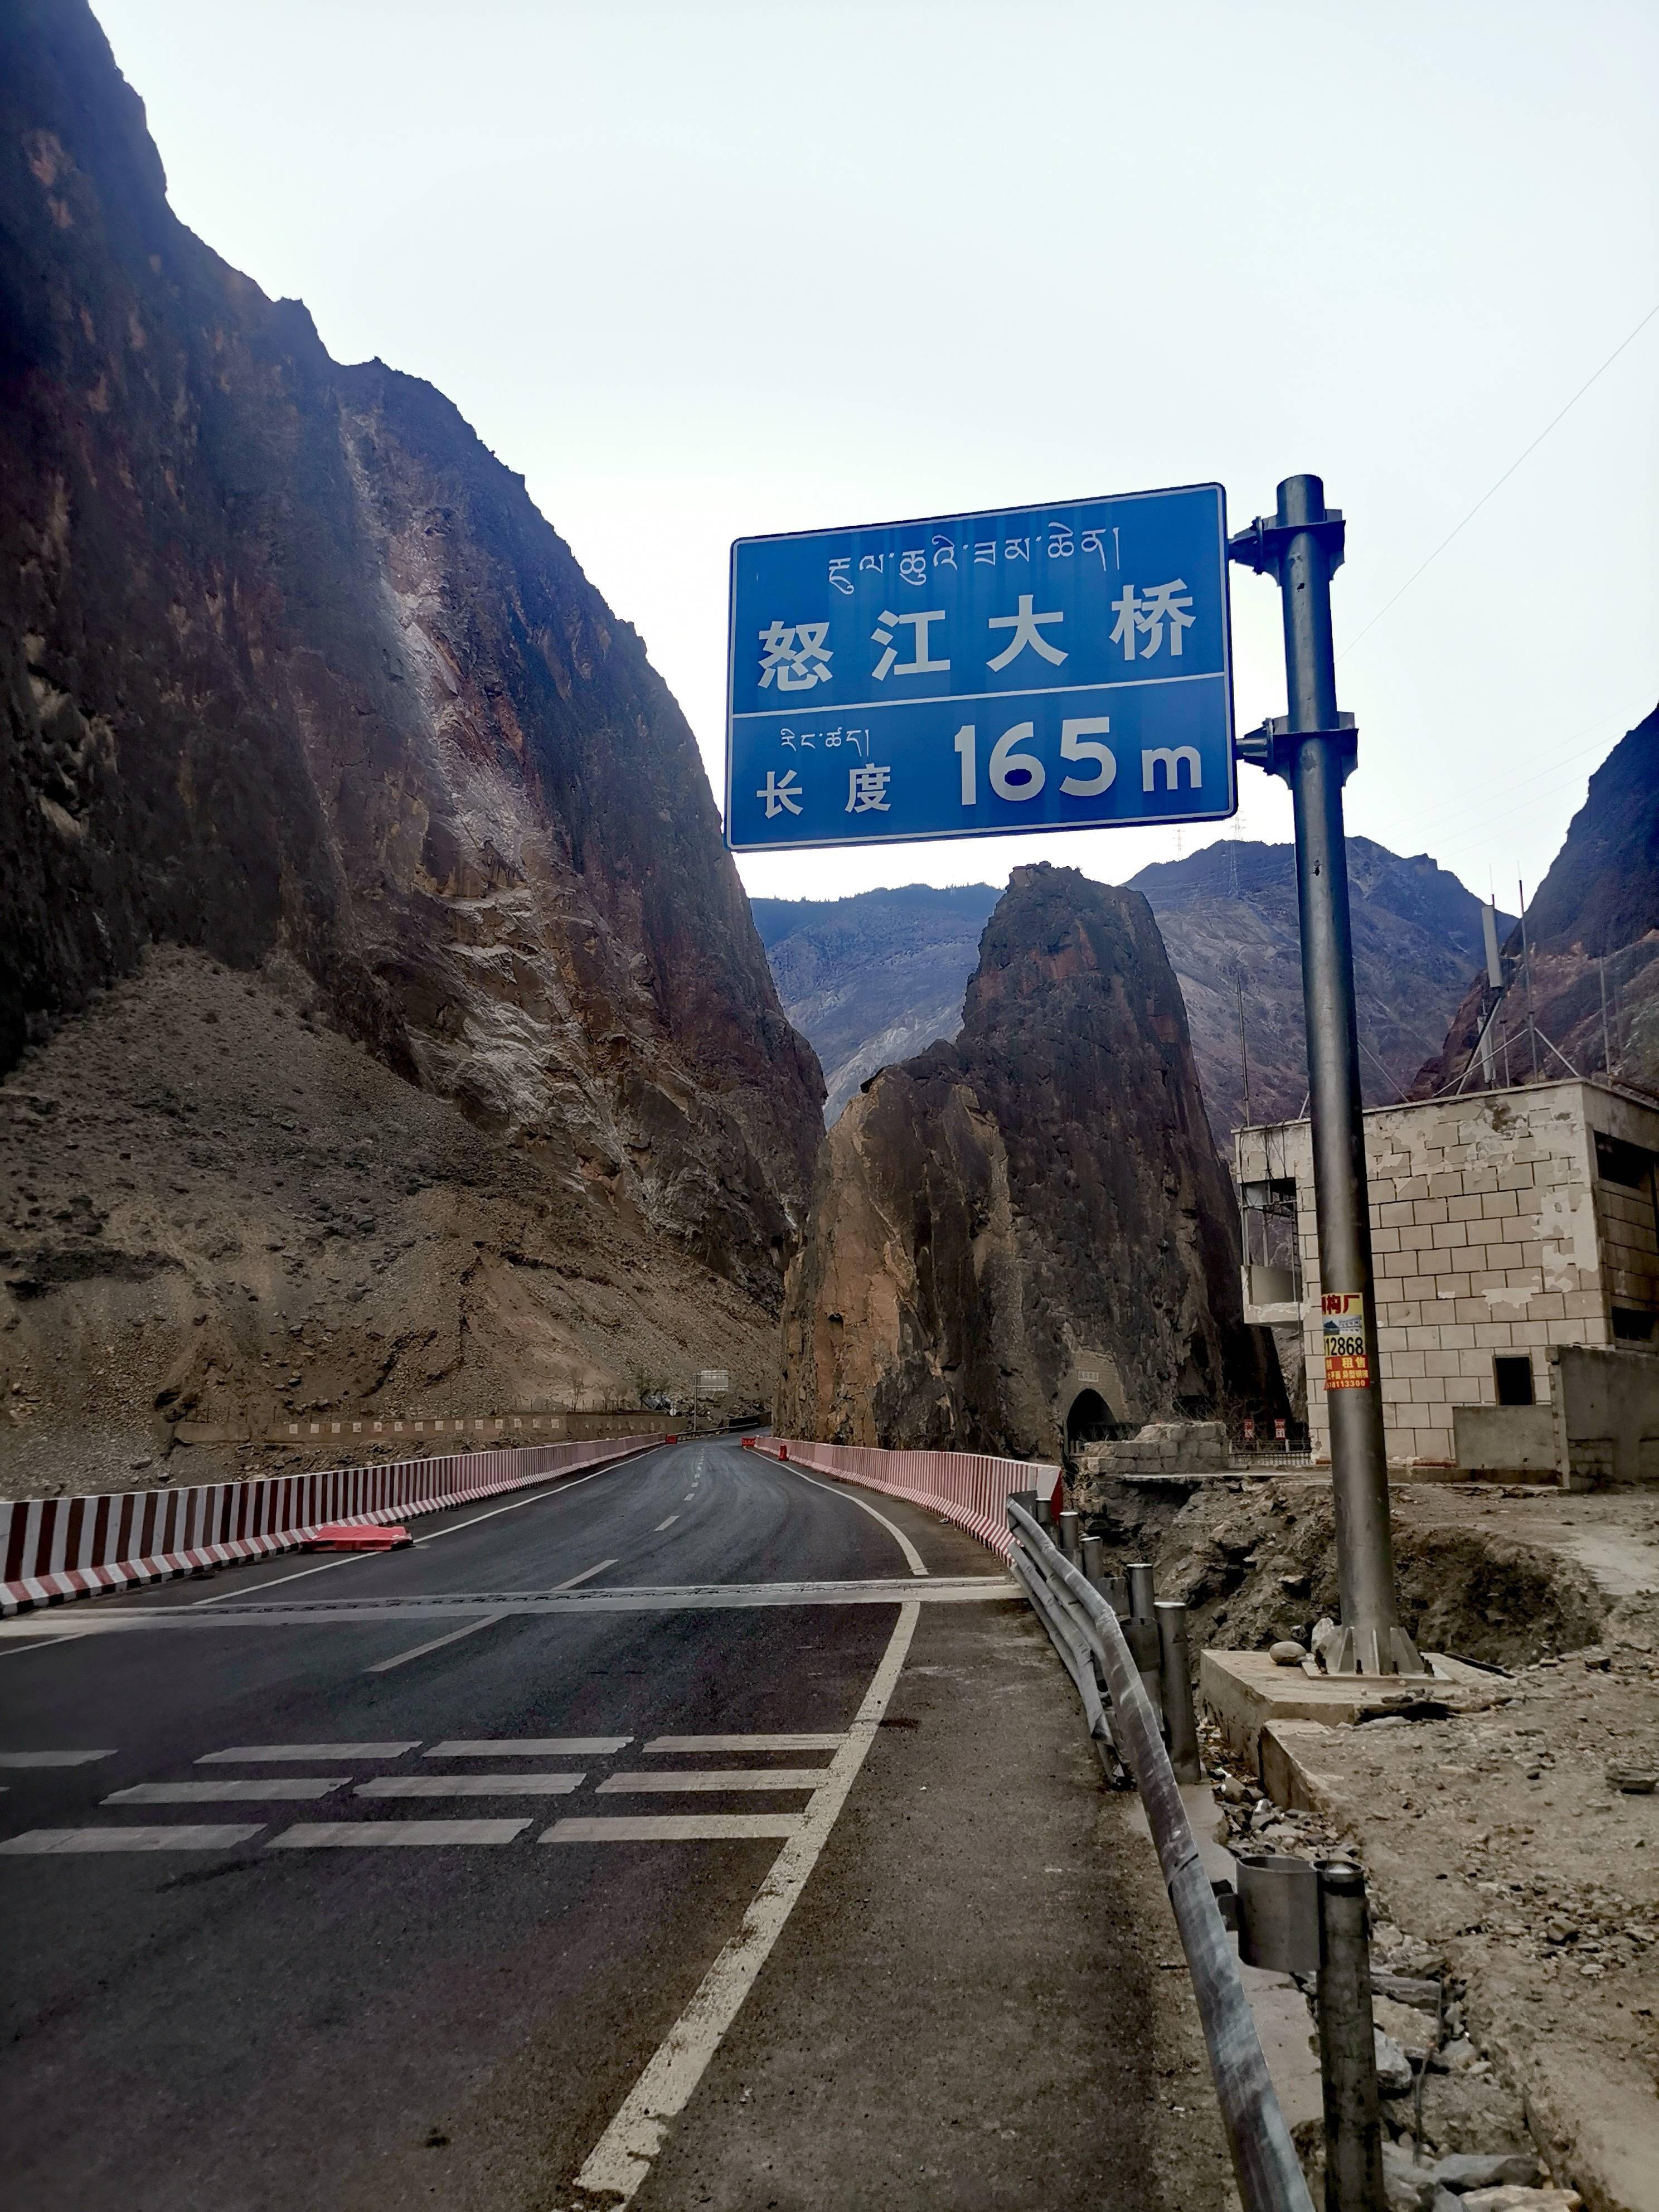 为什么说怒江大桥是川藏线上最令人难过的地方?